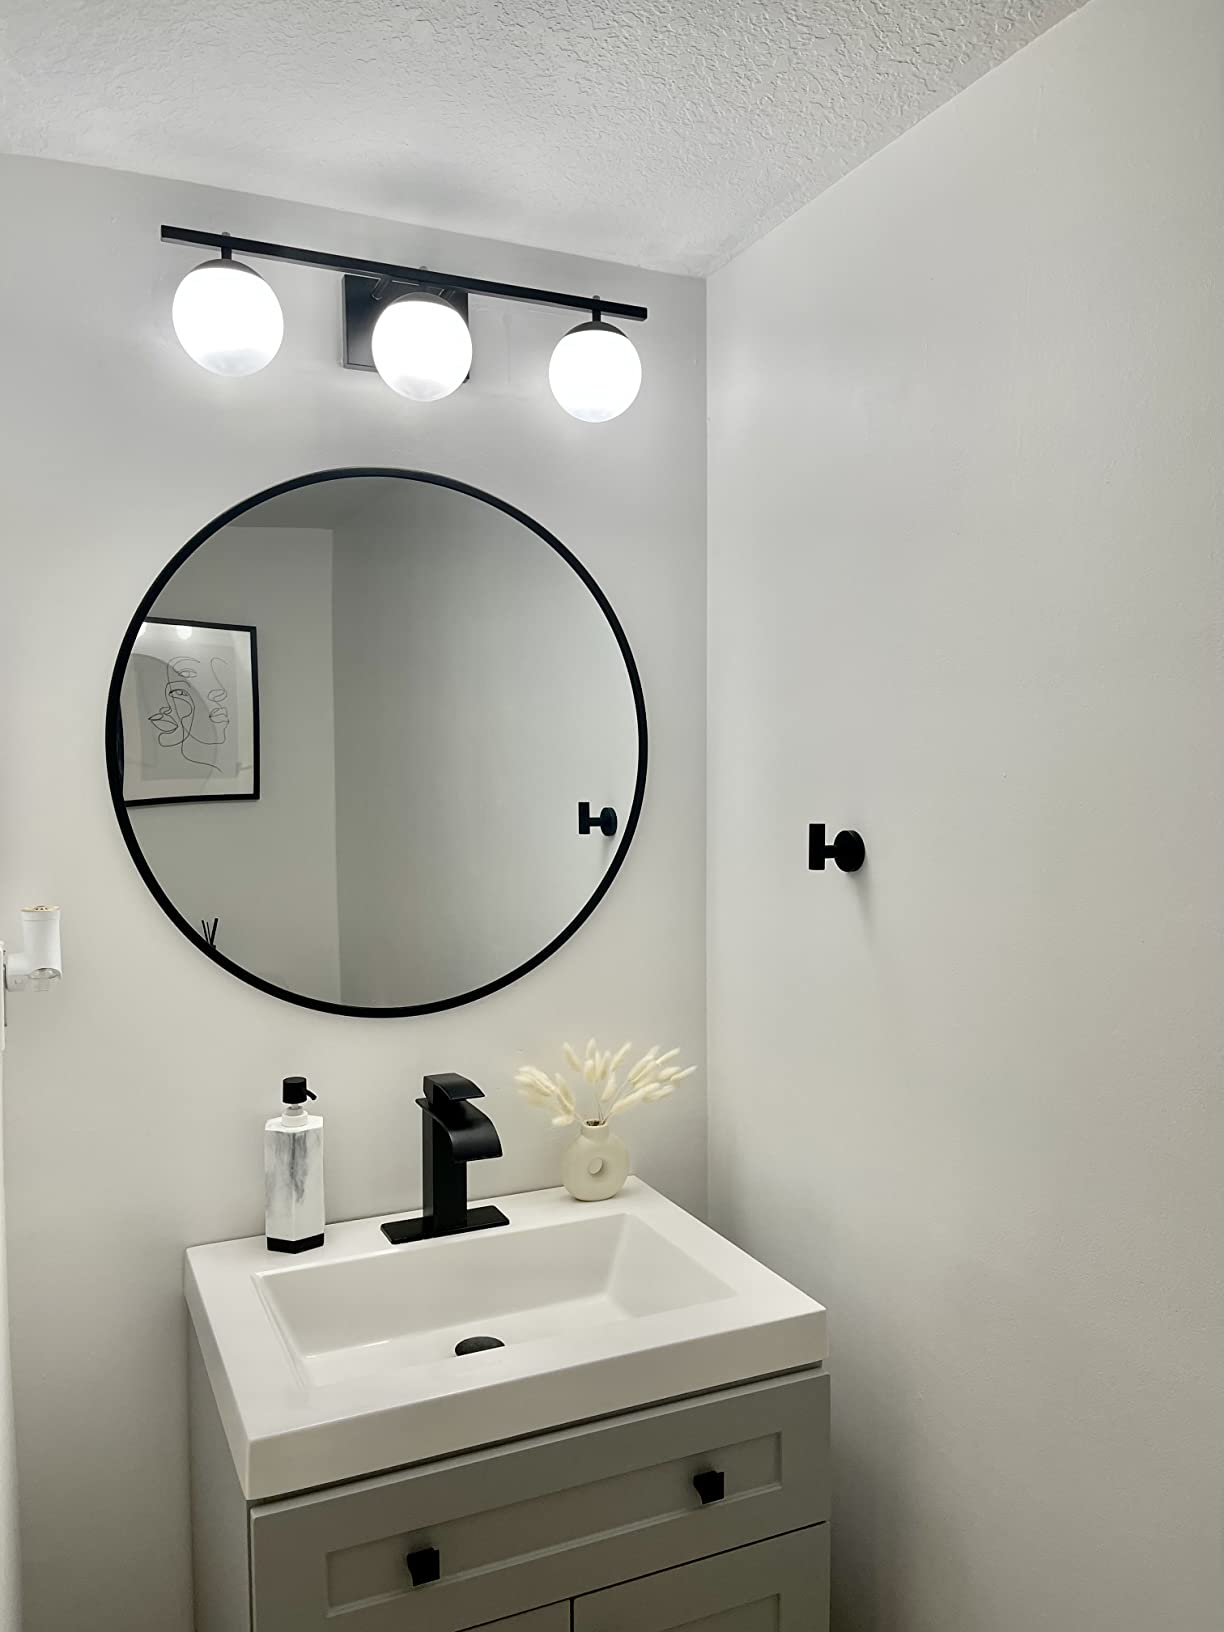 Contemporary bathroom light fixtures